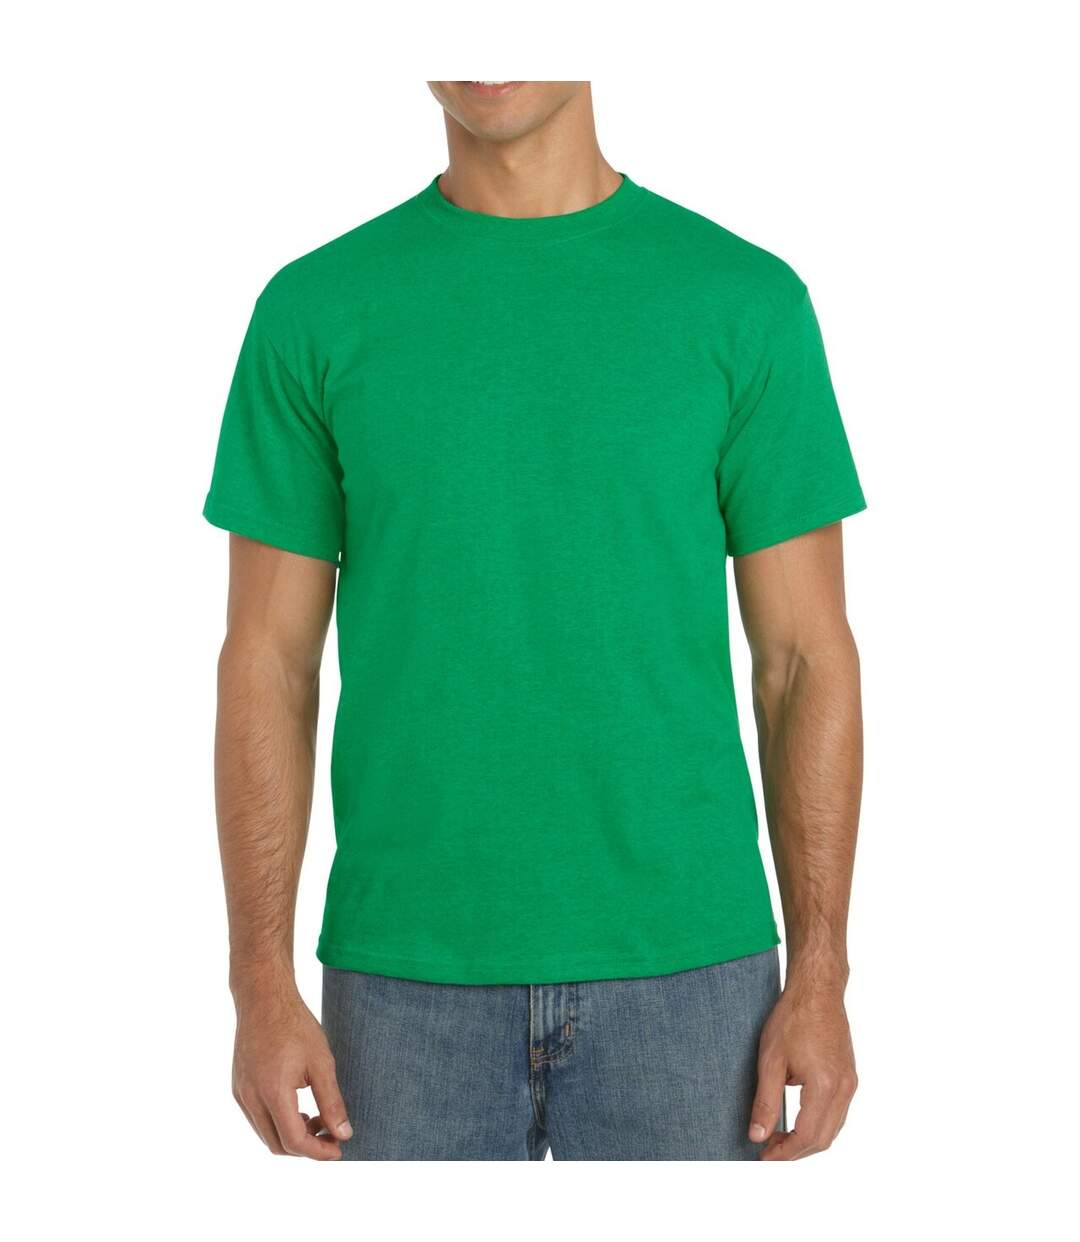 Gildan – Lot de 5 T-shirts manches courtes - Hommes (Vert chiné) - UTBC4807